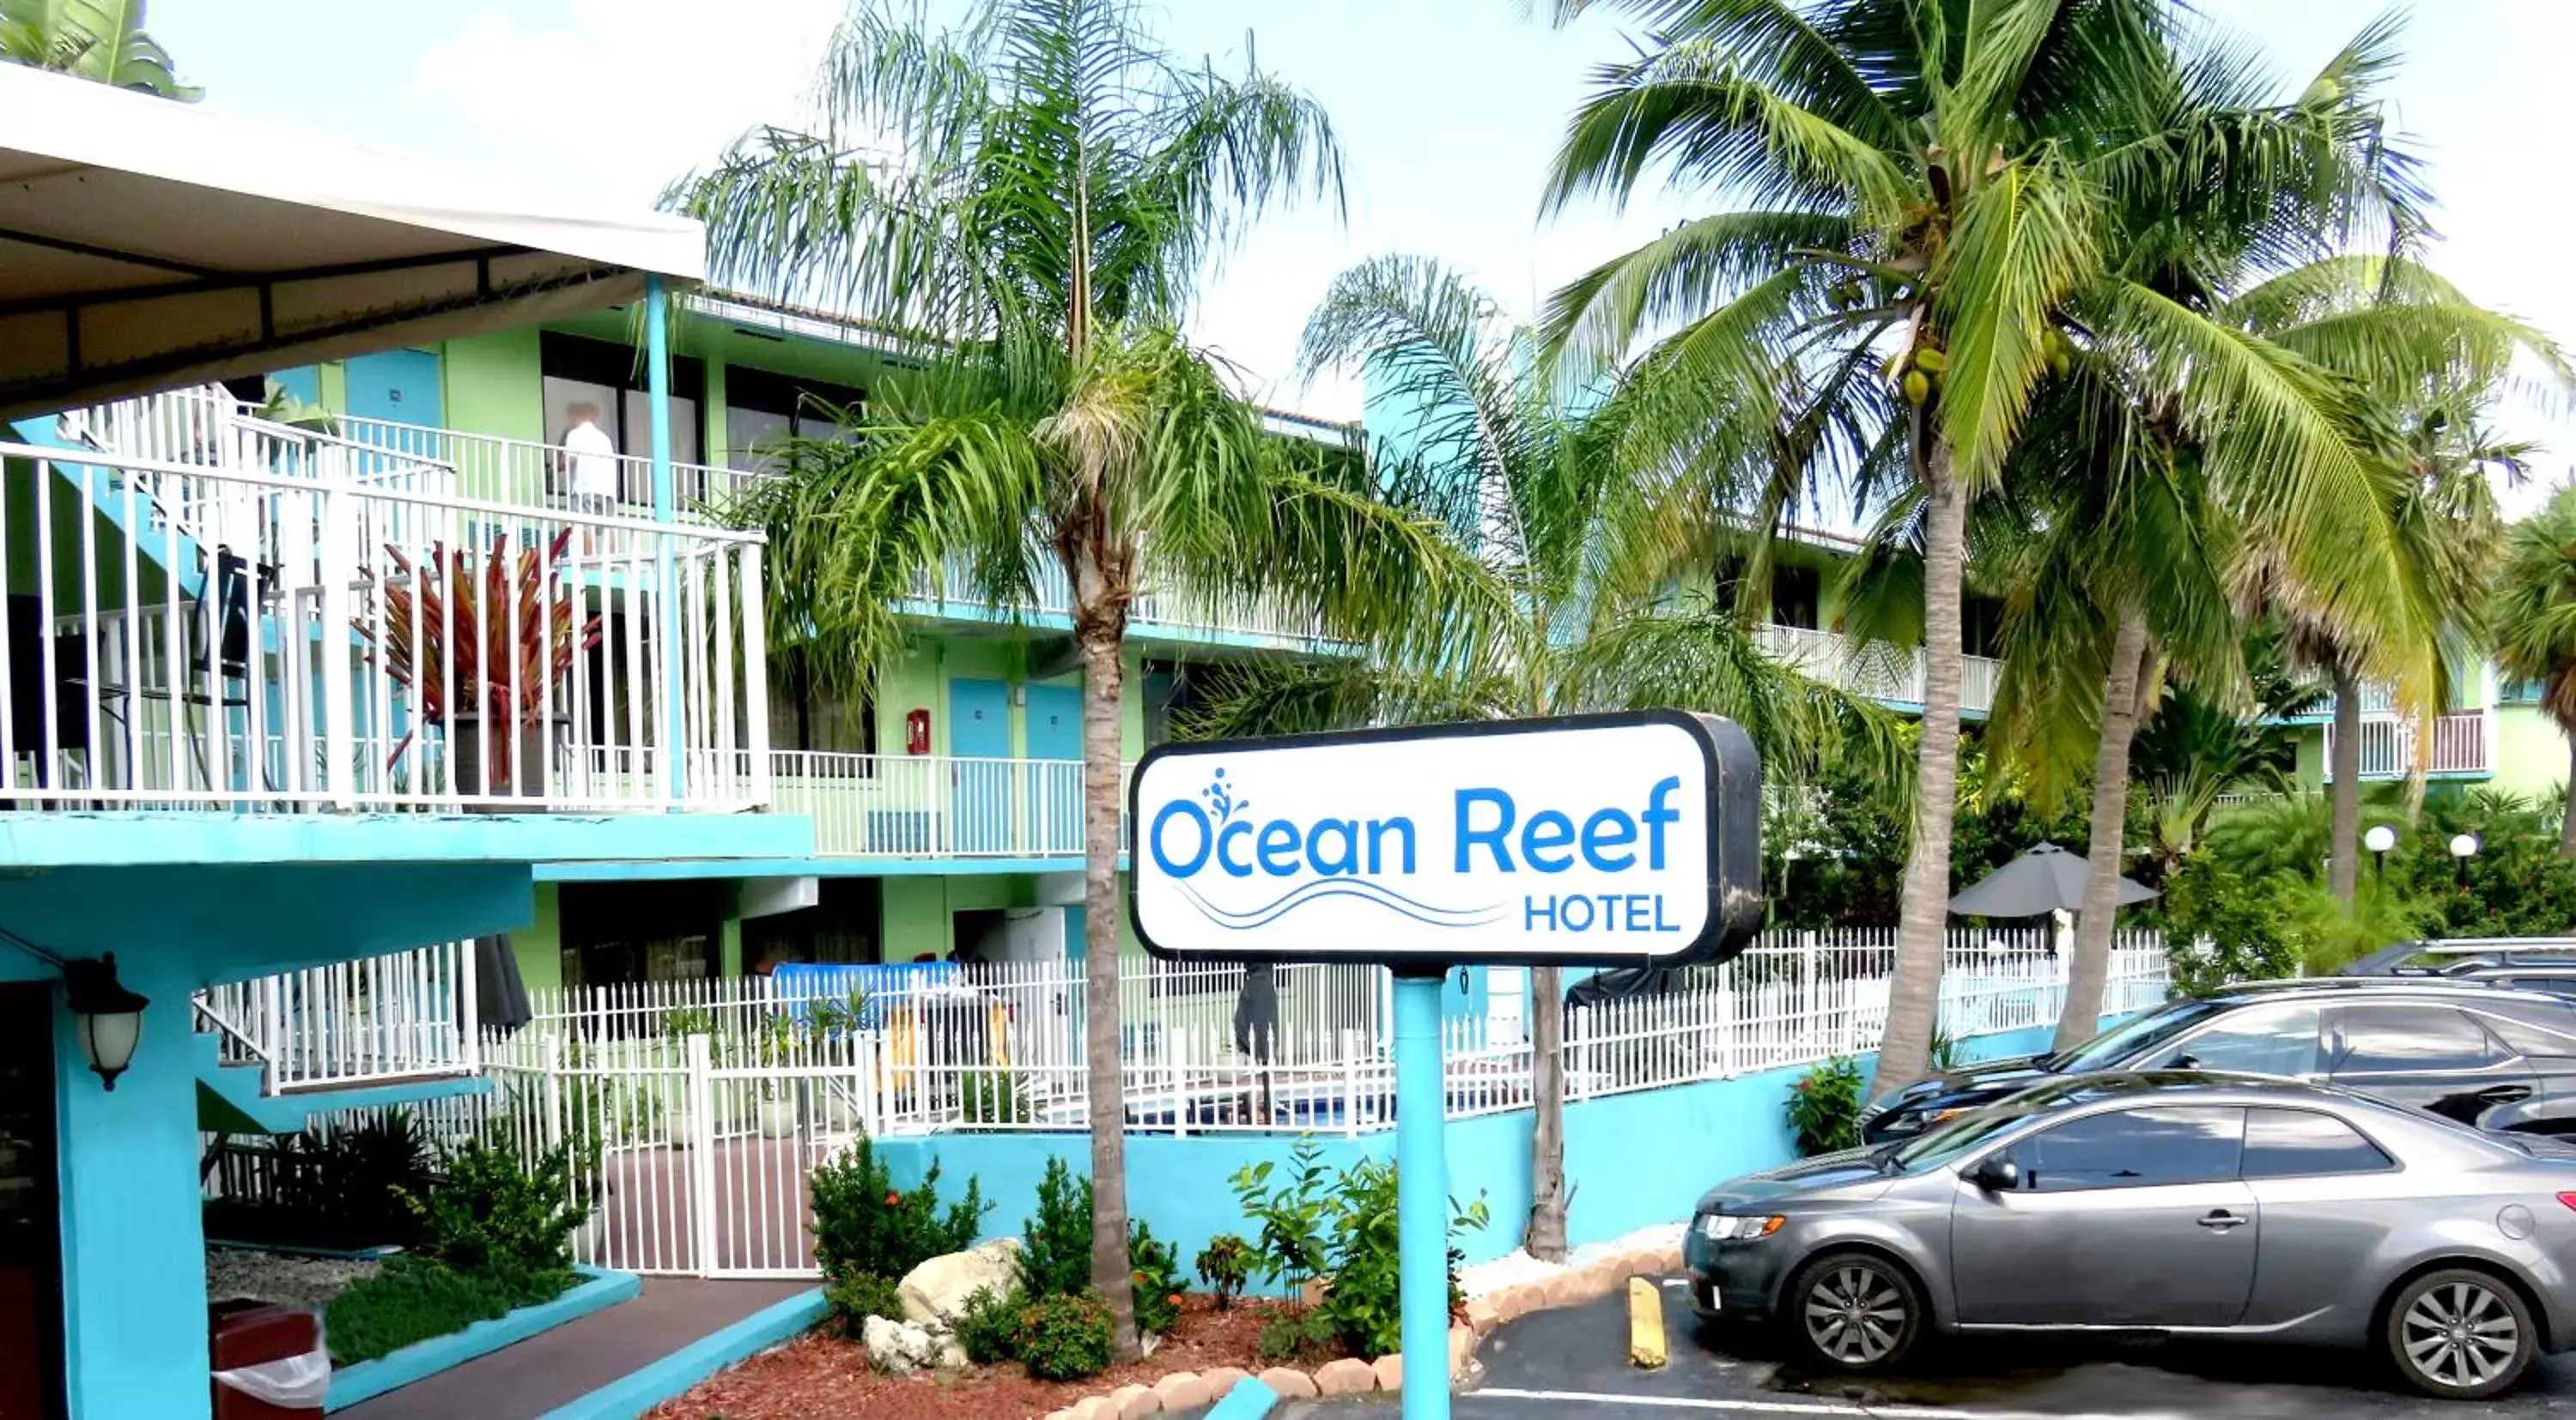 Facade/entrance in Ocean Reef Hotel